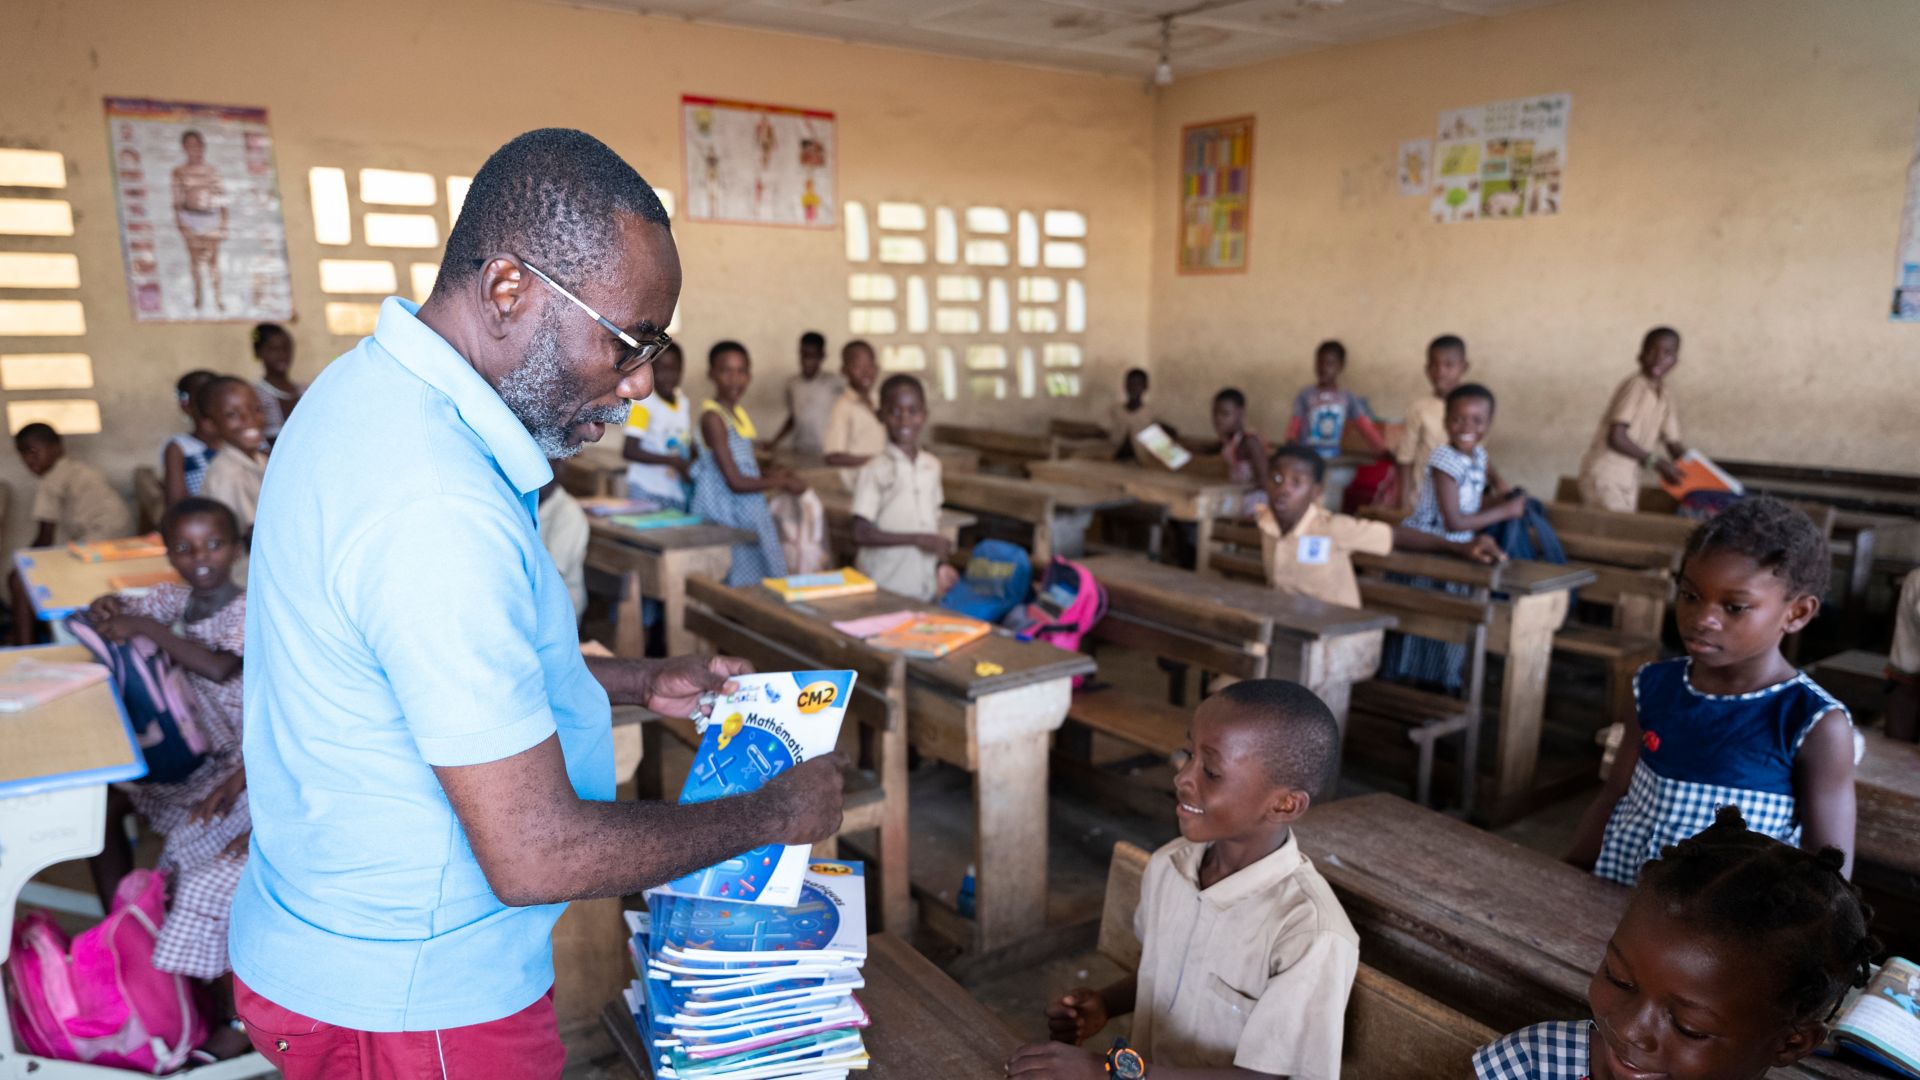 Insegnante africano distribuisce libri in classe agli alunni